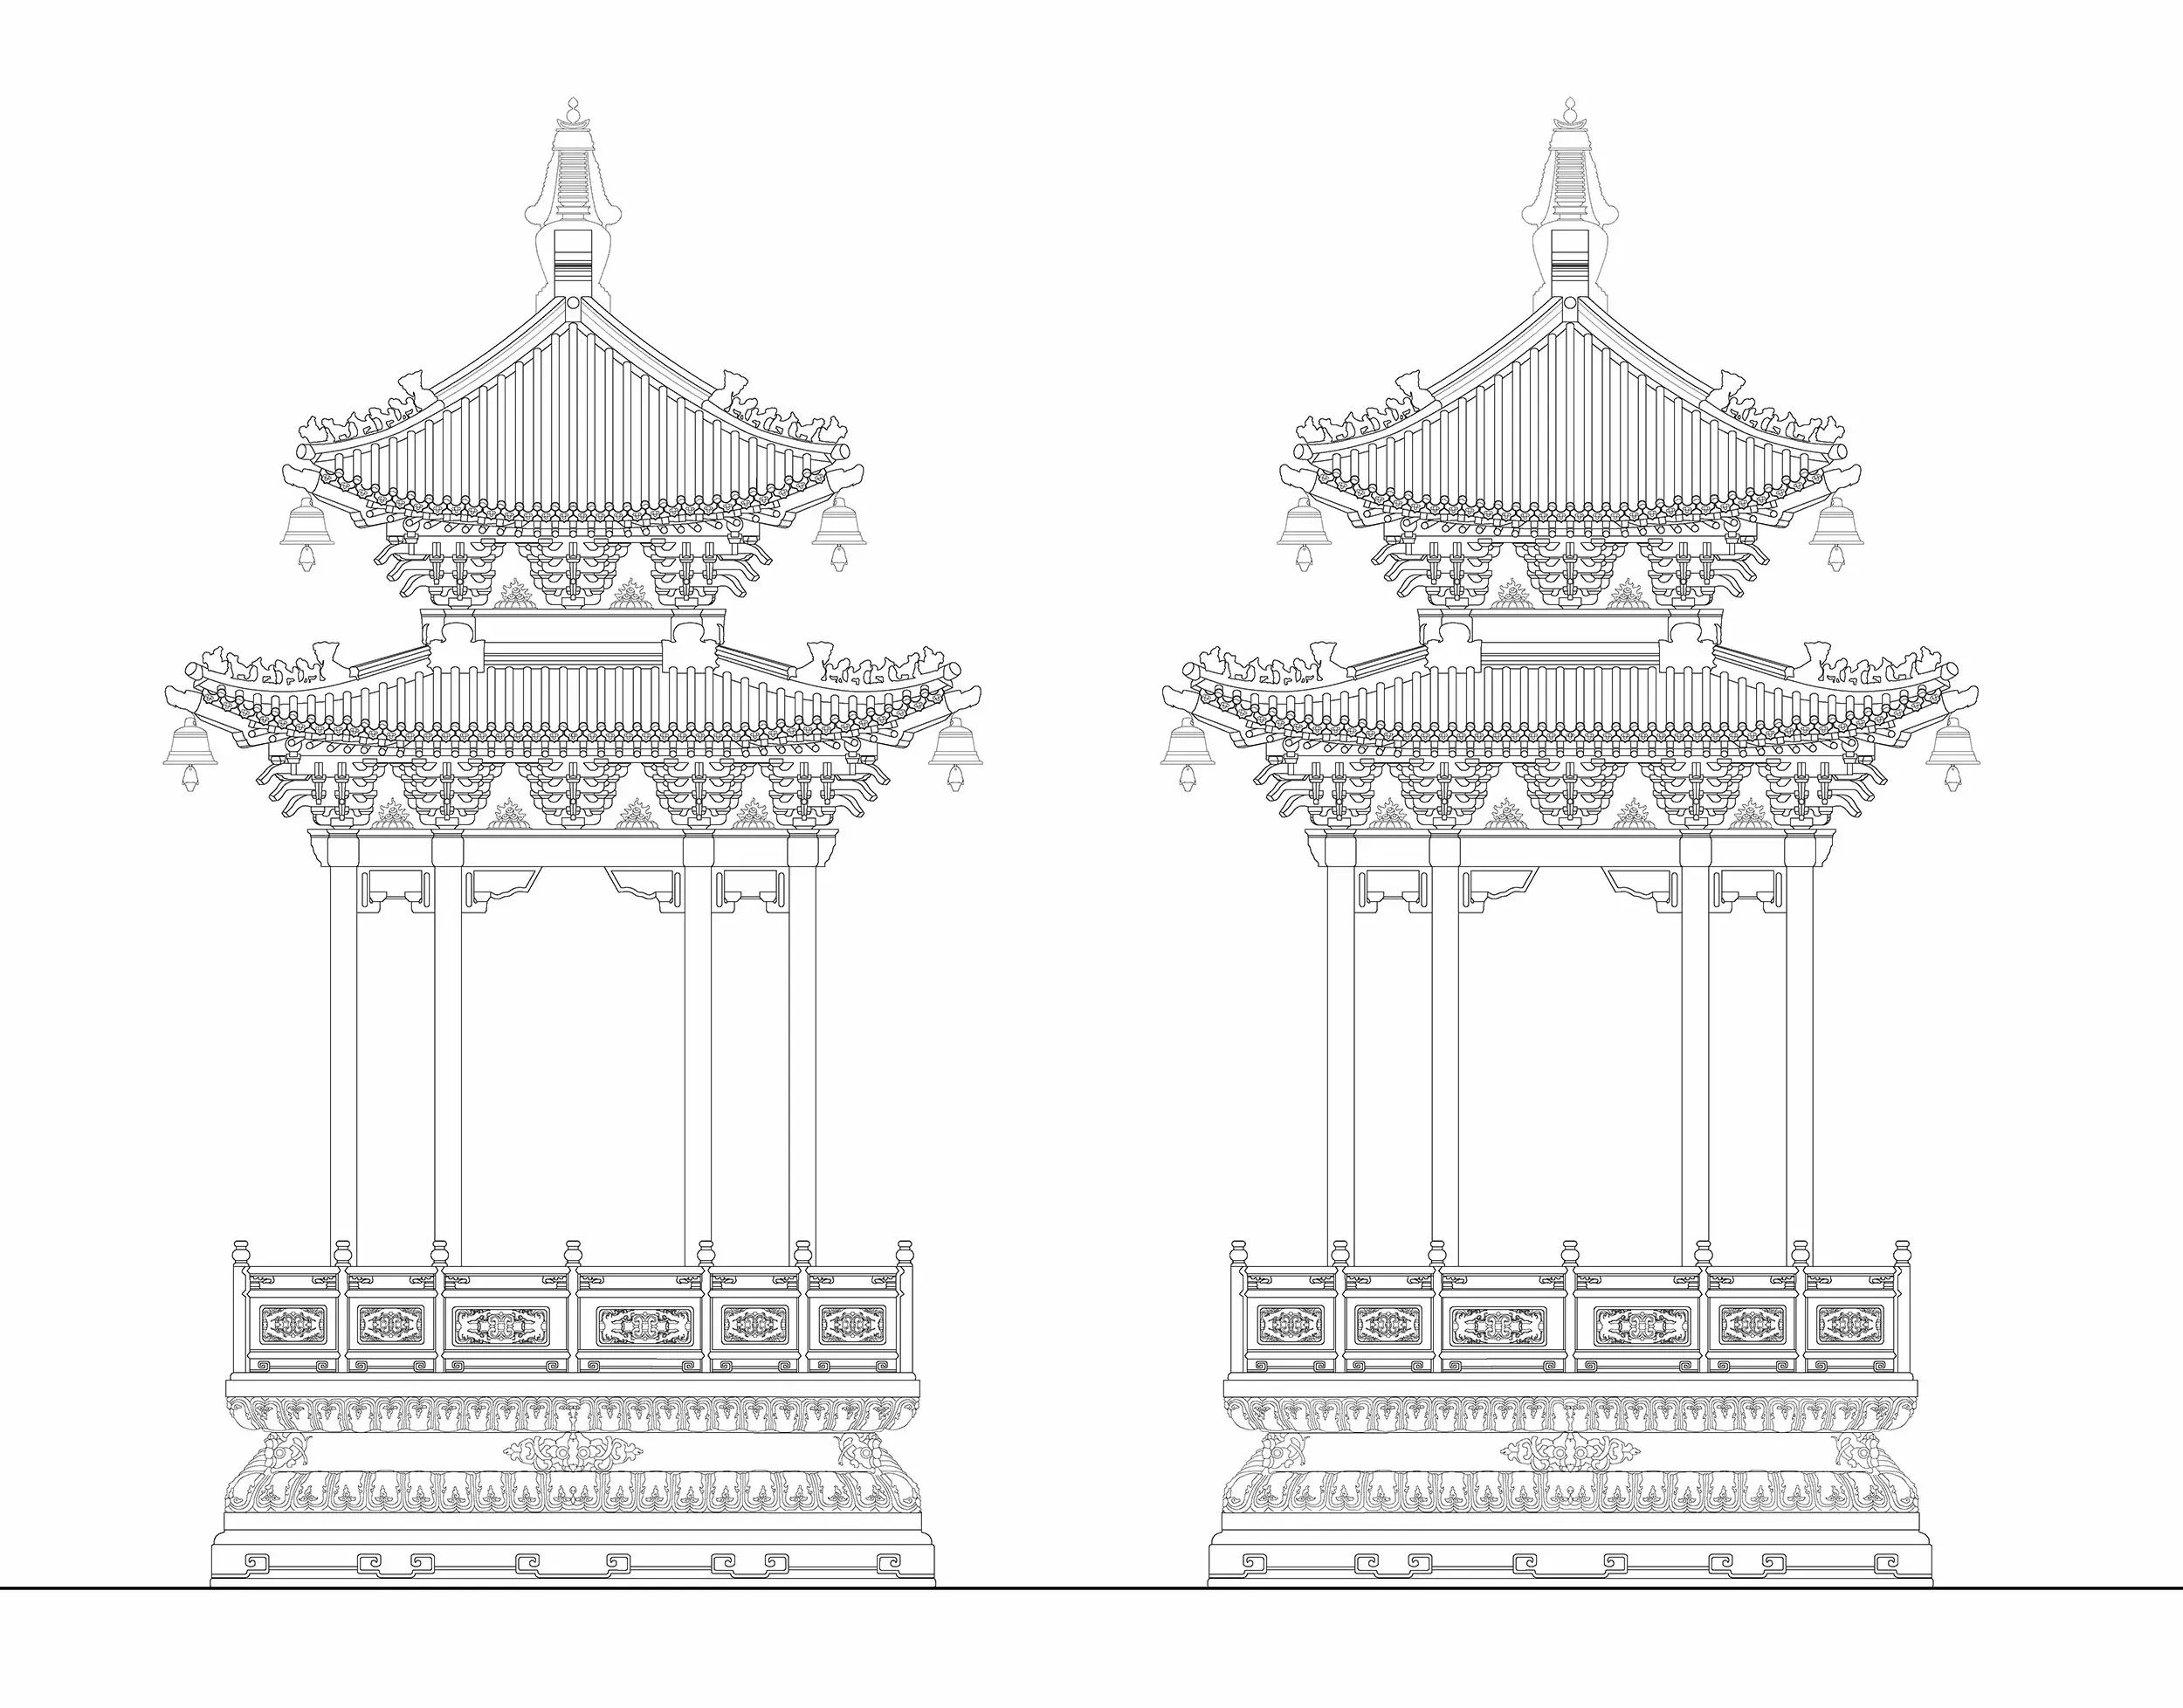 建筑主体采用明清皇家建筑中最高等级的重檐庑殿顶形式(北京故宫内最